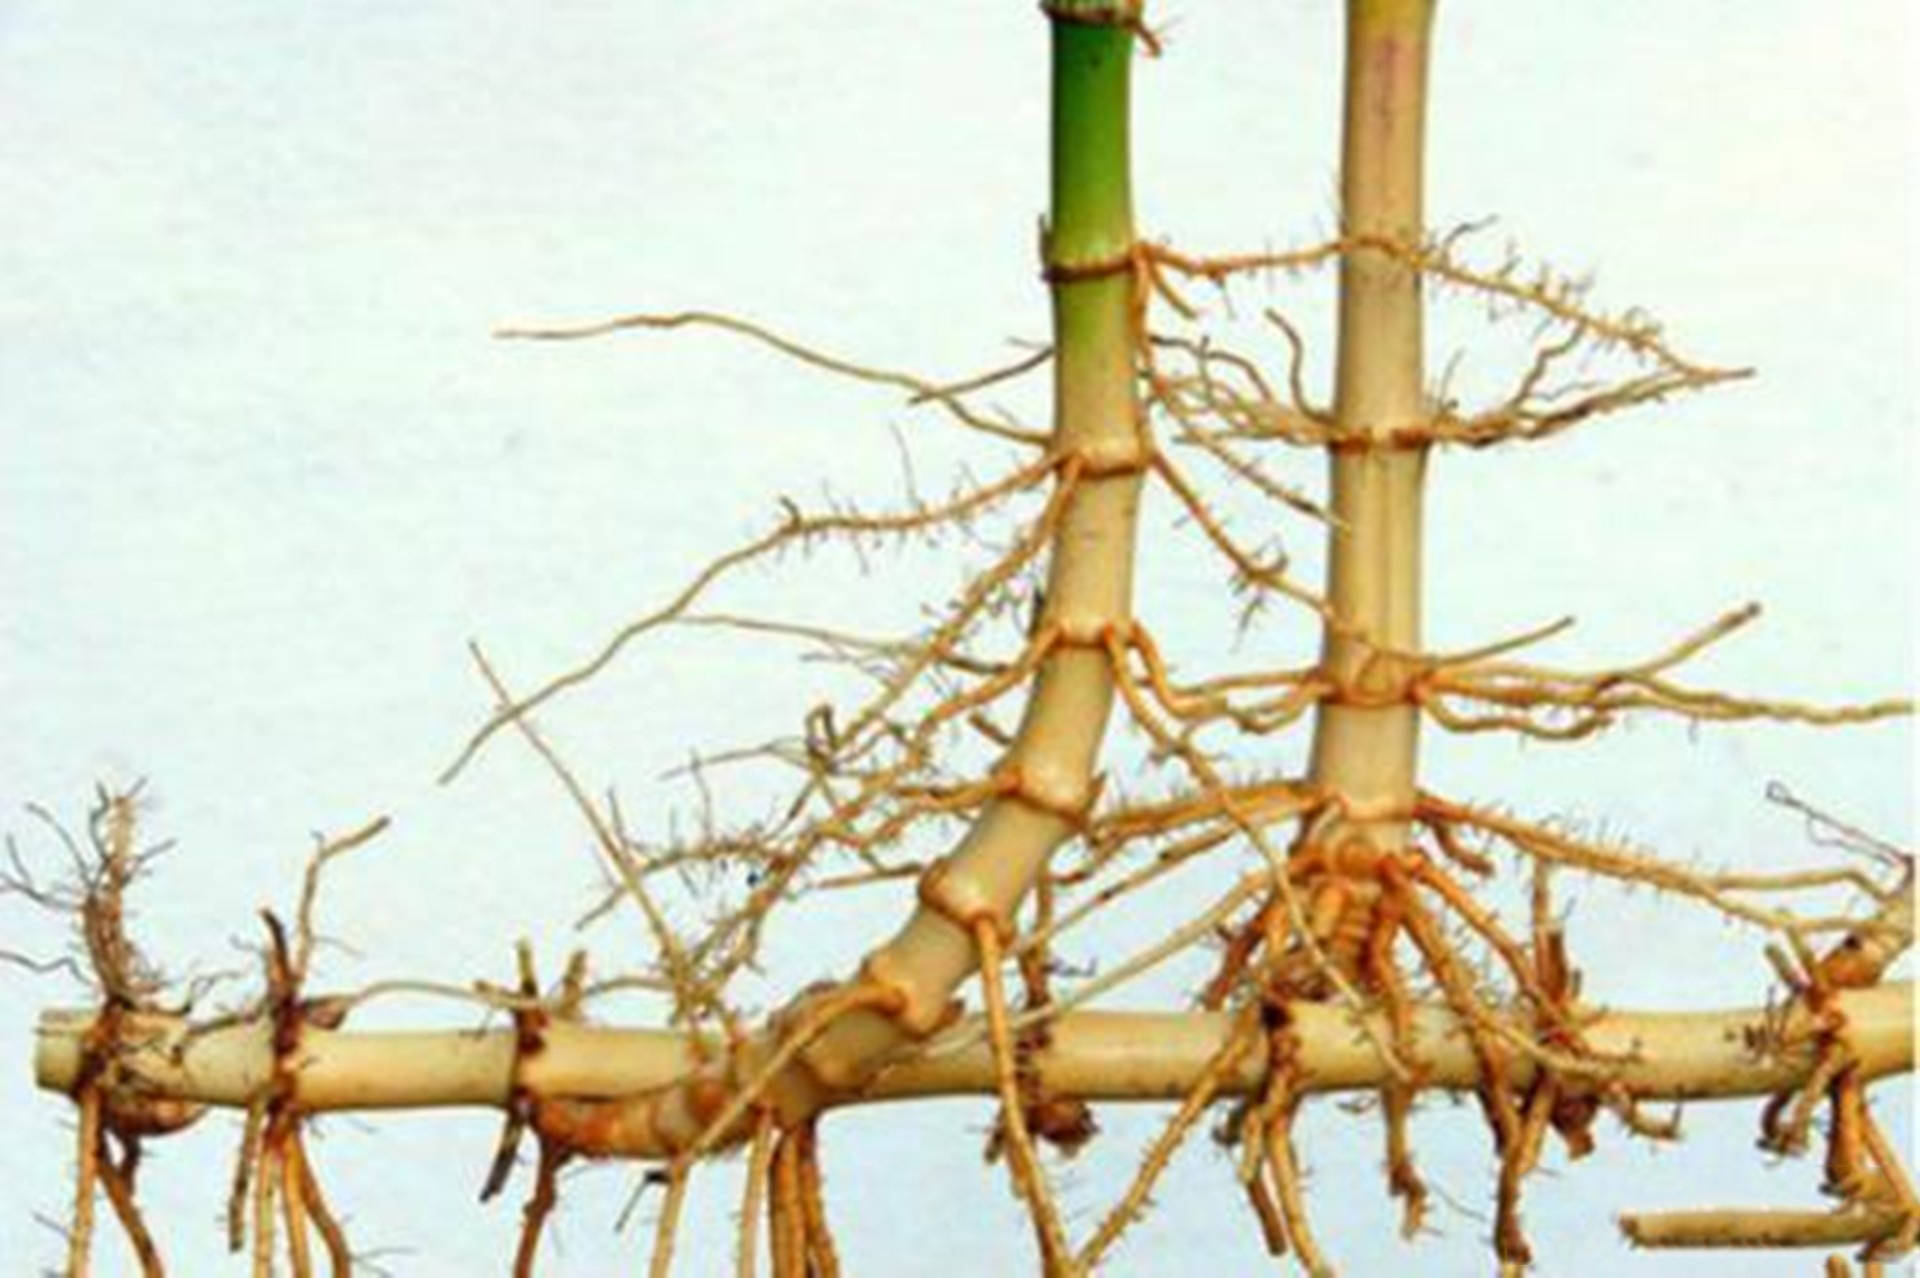 芝麻是竹子的克星,芝麻在生长过程中根部会分泌